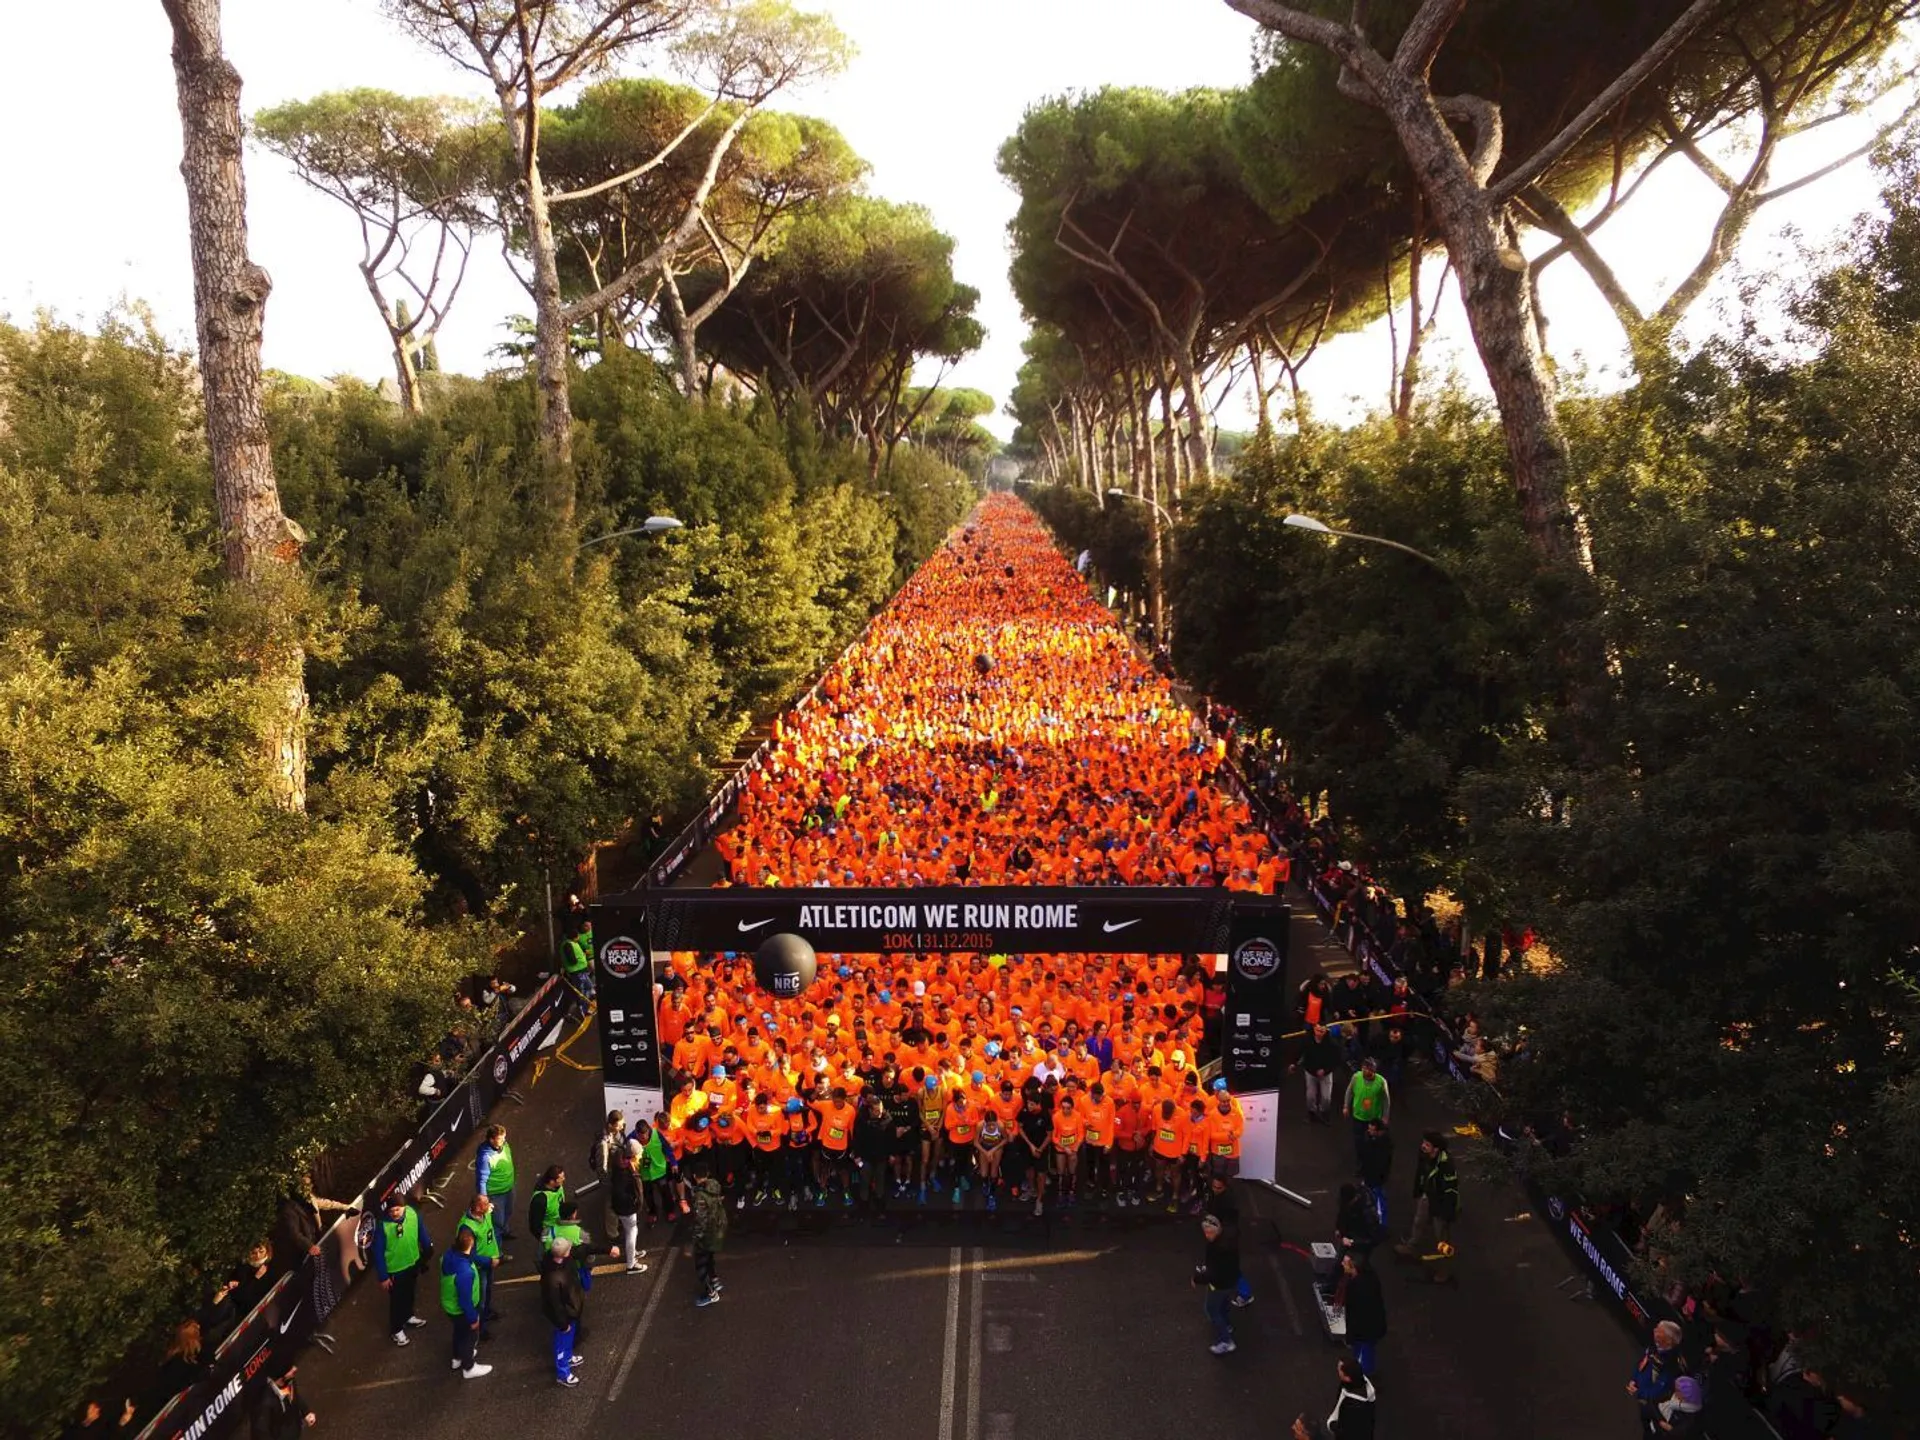 Atleticom We Run Rome